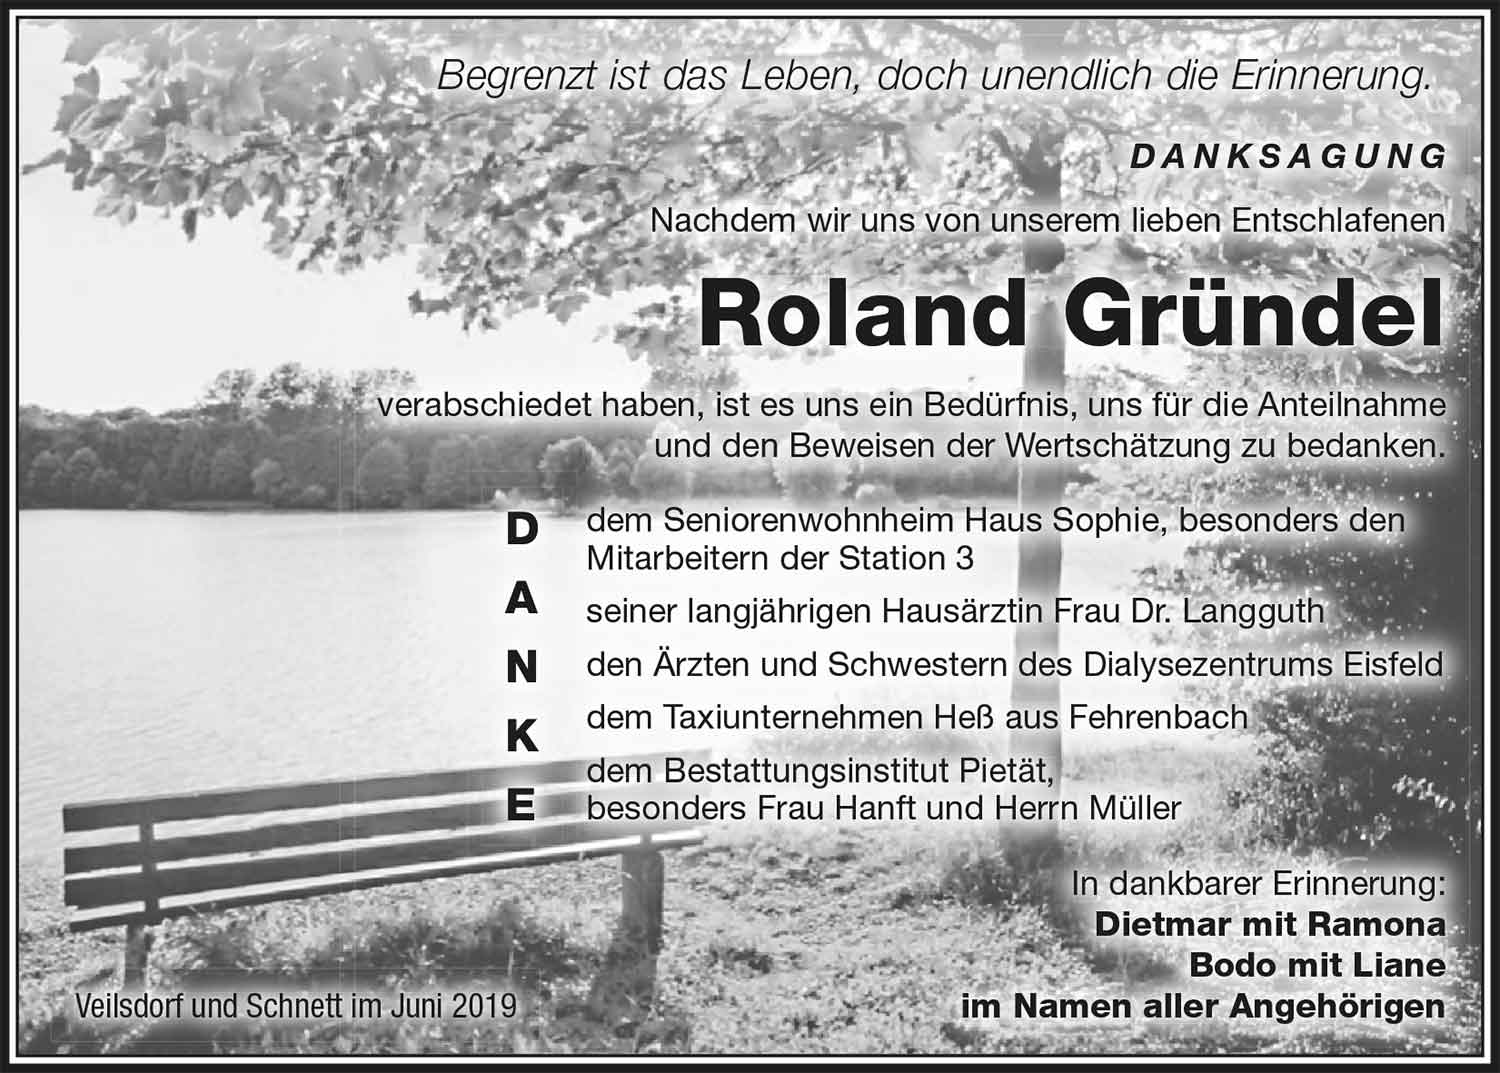 Danksagung_Roland_Gruendel